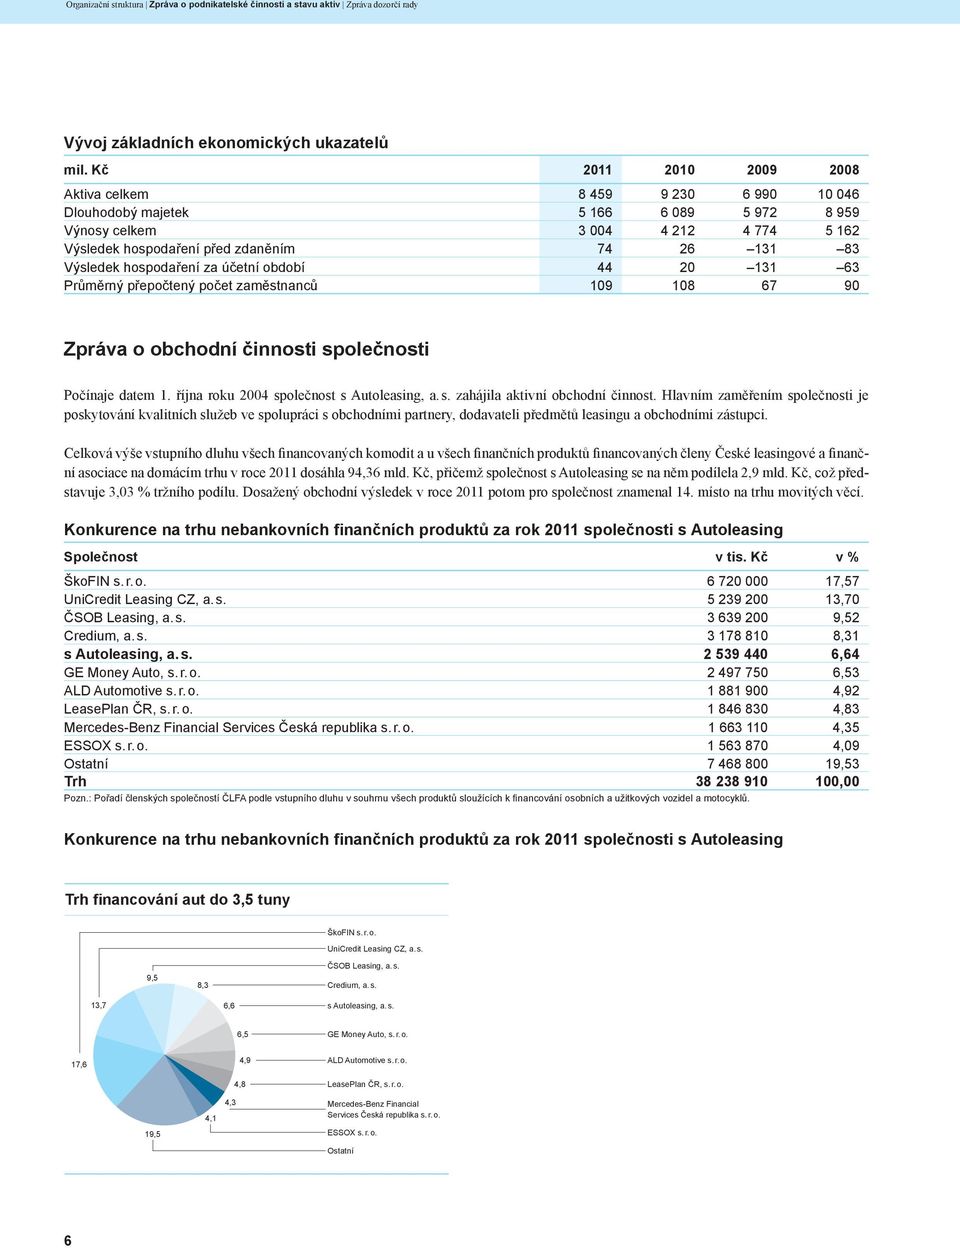 hospodaření za účetní období 44 20 131 63 Průměrný přepočtený počet zaměstnanců 109 108 67 90 Zpráva o obchodní činnosti společnosti Počínaje datem 1. října roku 2004 společnost s Autoleasing, a. s. zahájila aktivní obchodní činnost.